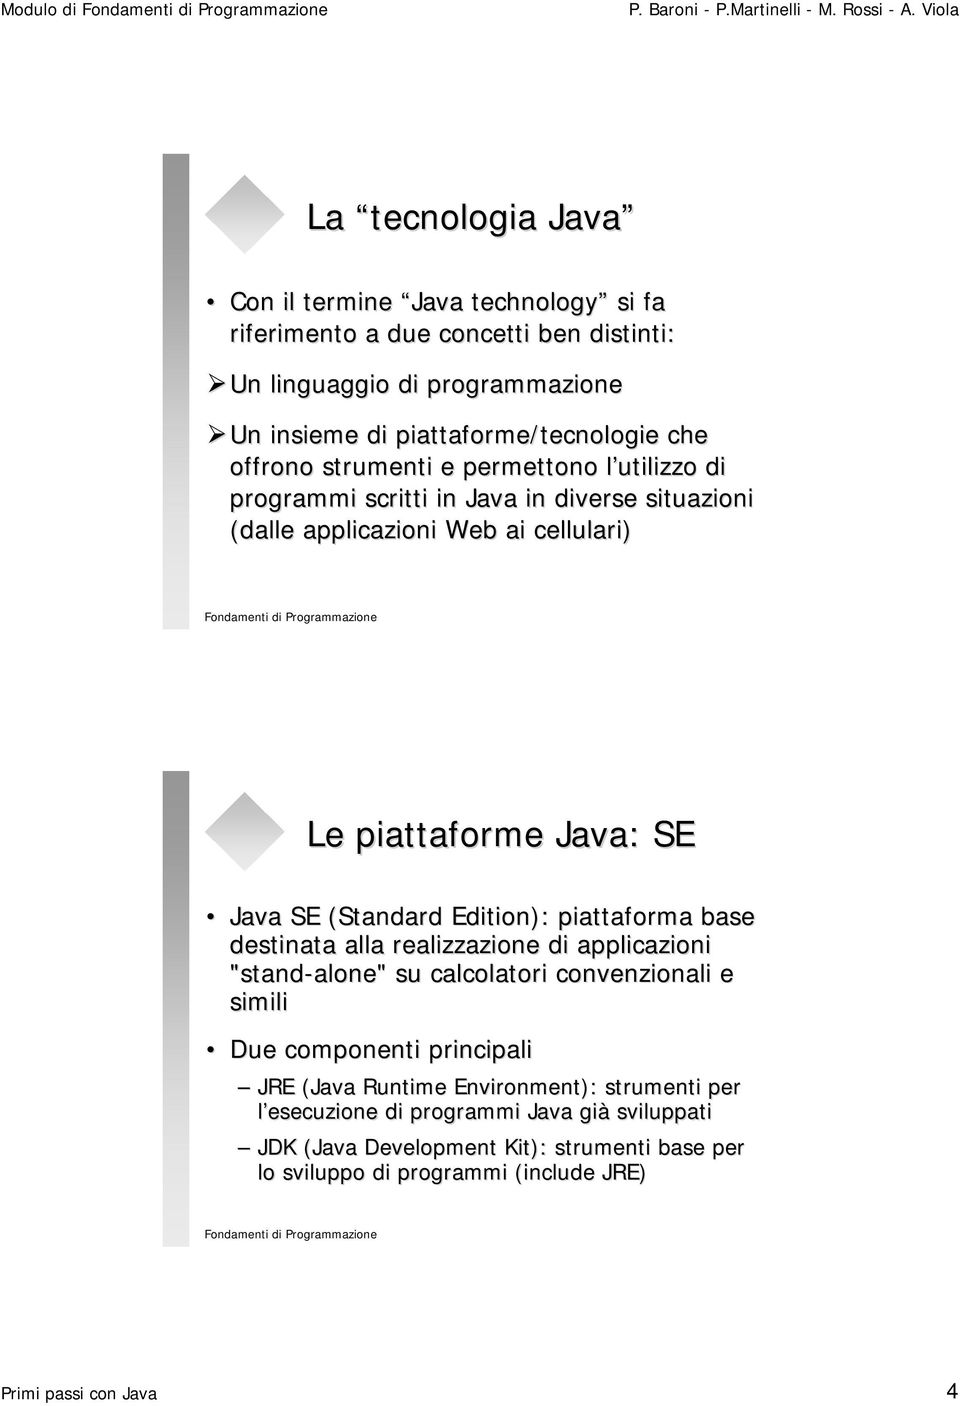 Edition): piattaforma base destinata alla realizzazione di applicazioni "stand-alone" alone" su calcolatori convenzionali e simili Due componenti principali JRE (Java Runtime